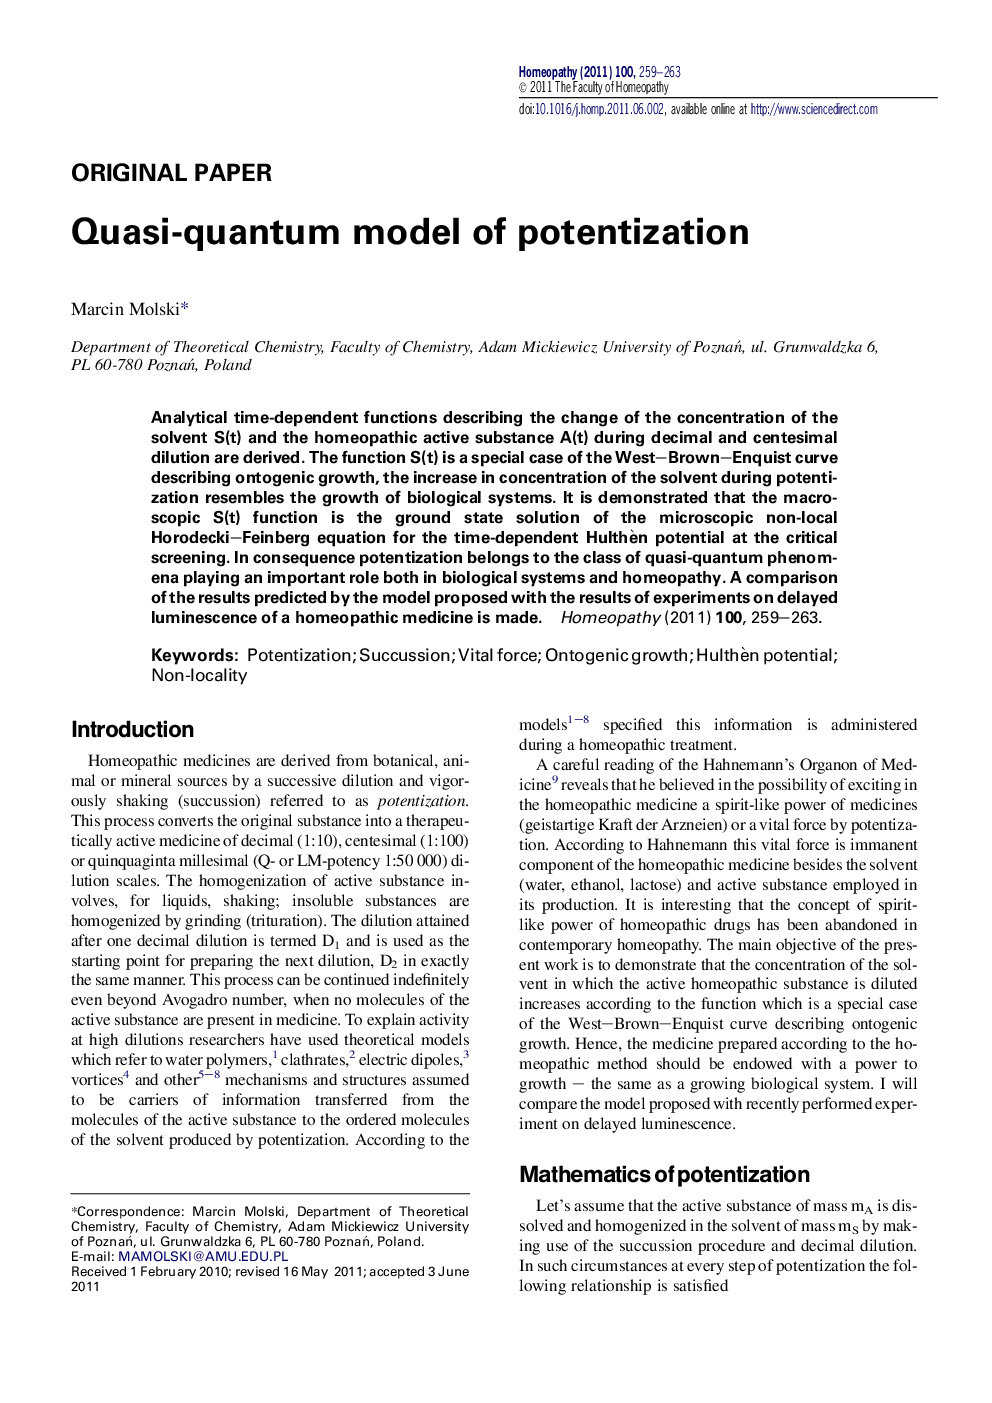 Quasi-quantum model of potentization